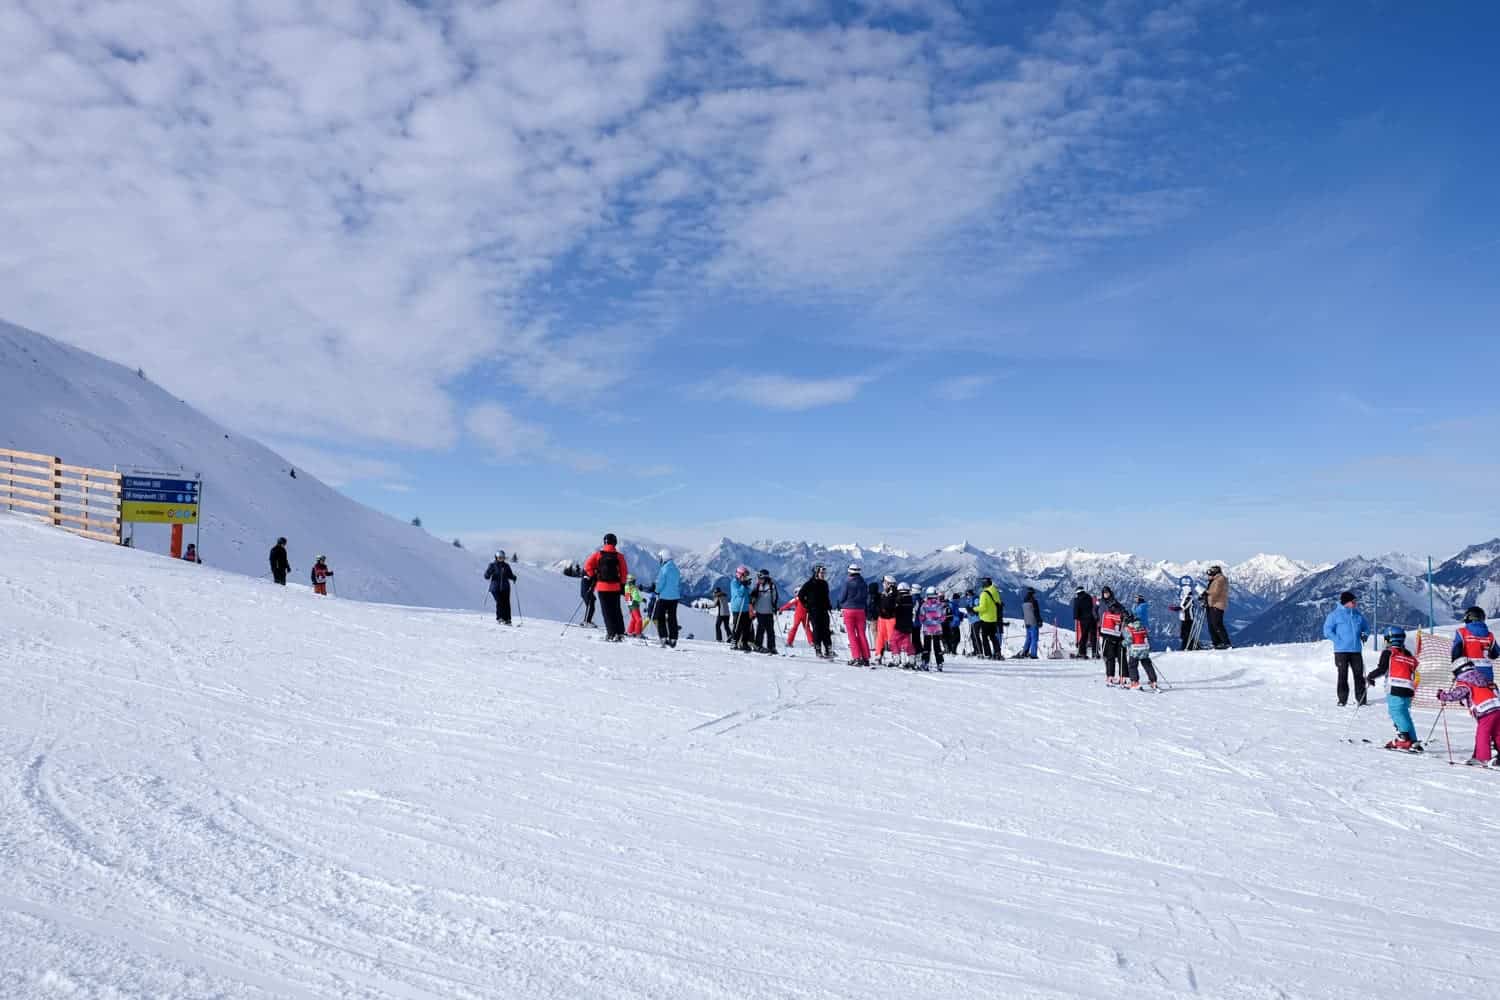 Skiing in Alpbachtal, Austria at Ski Jewel